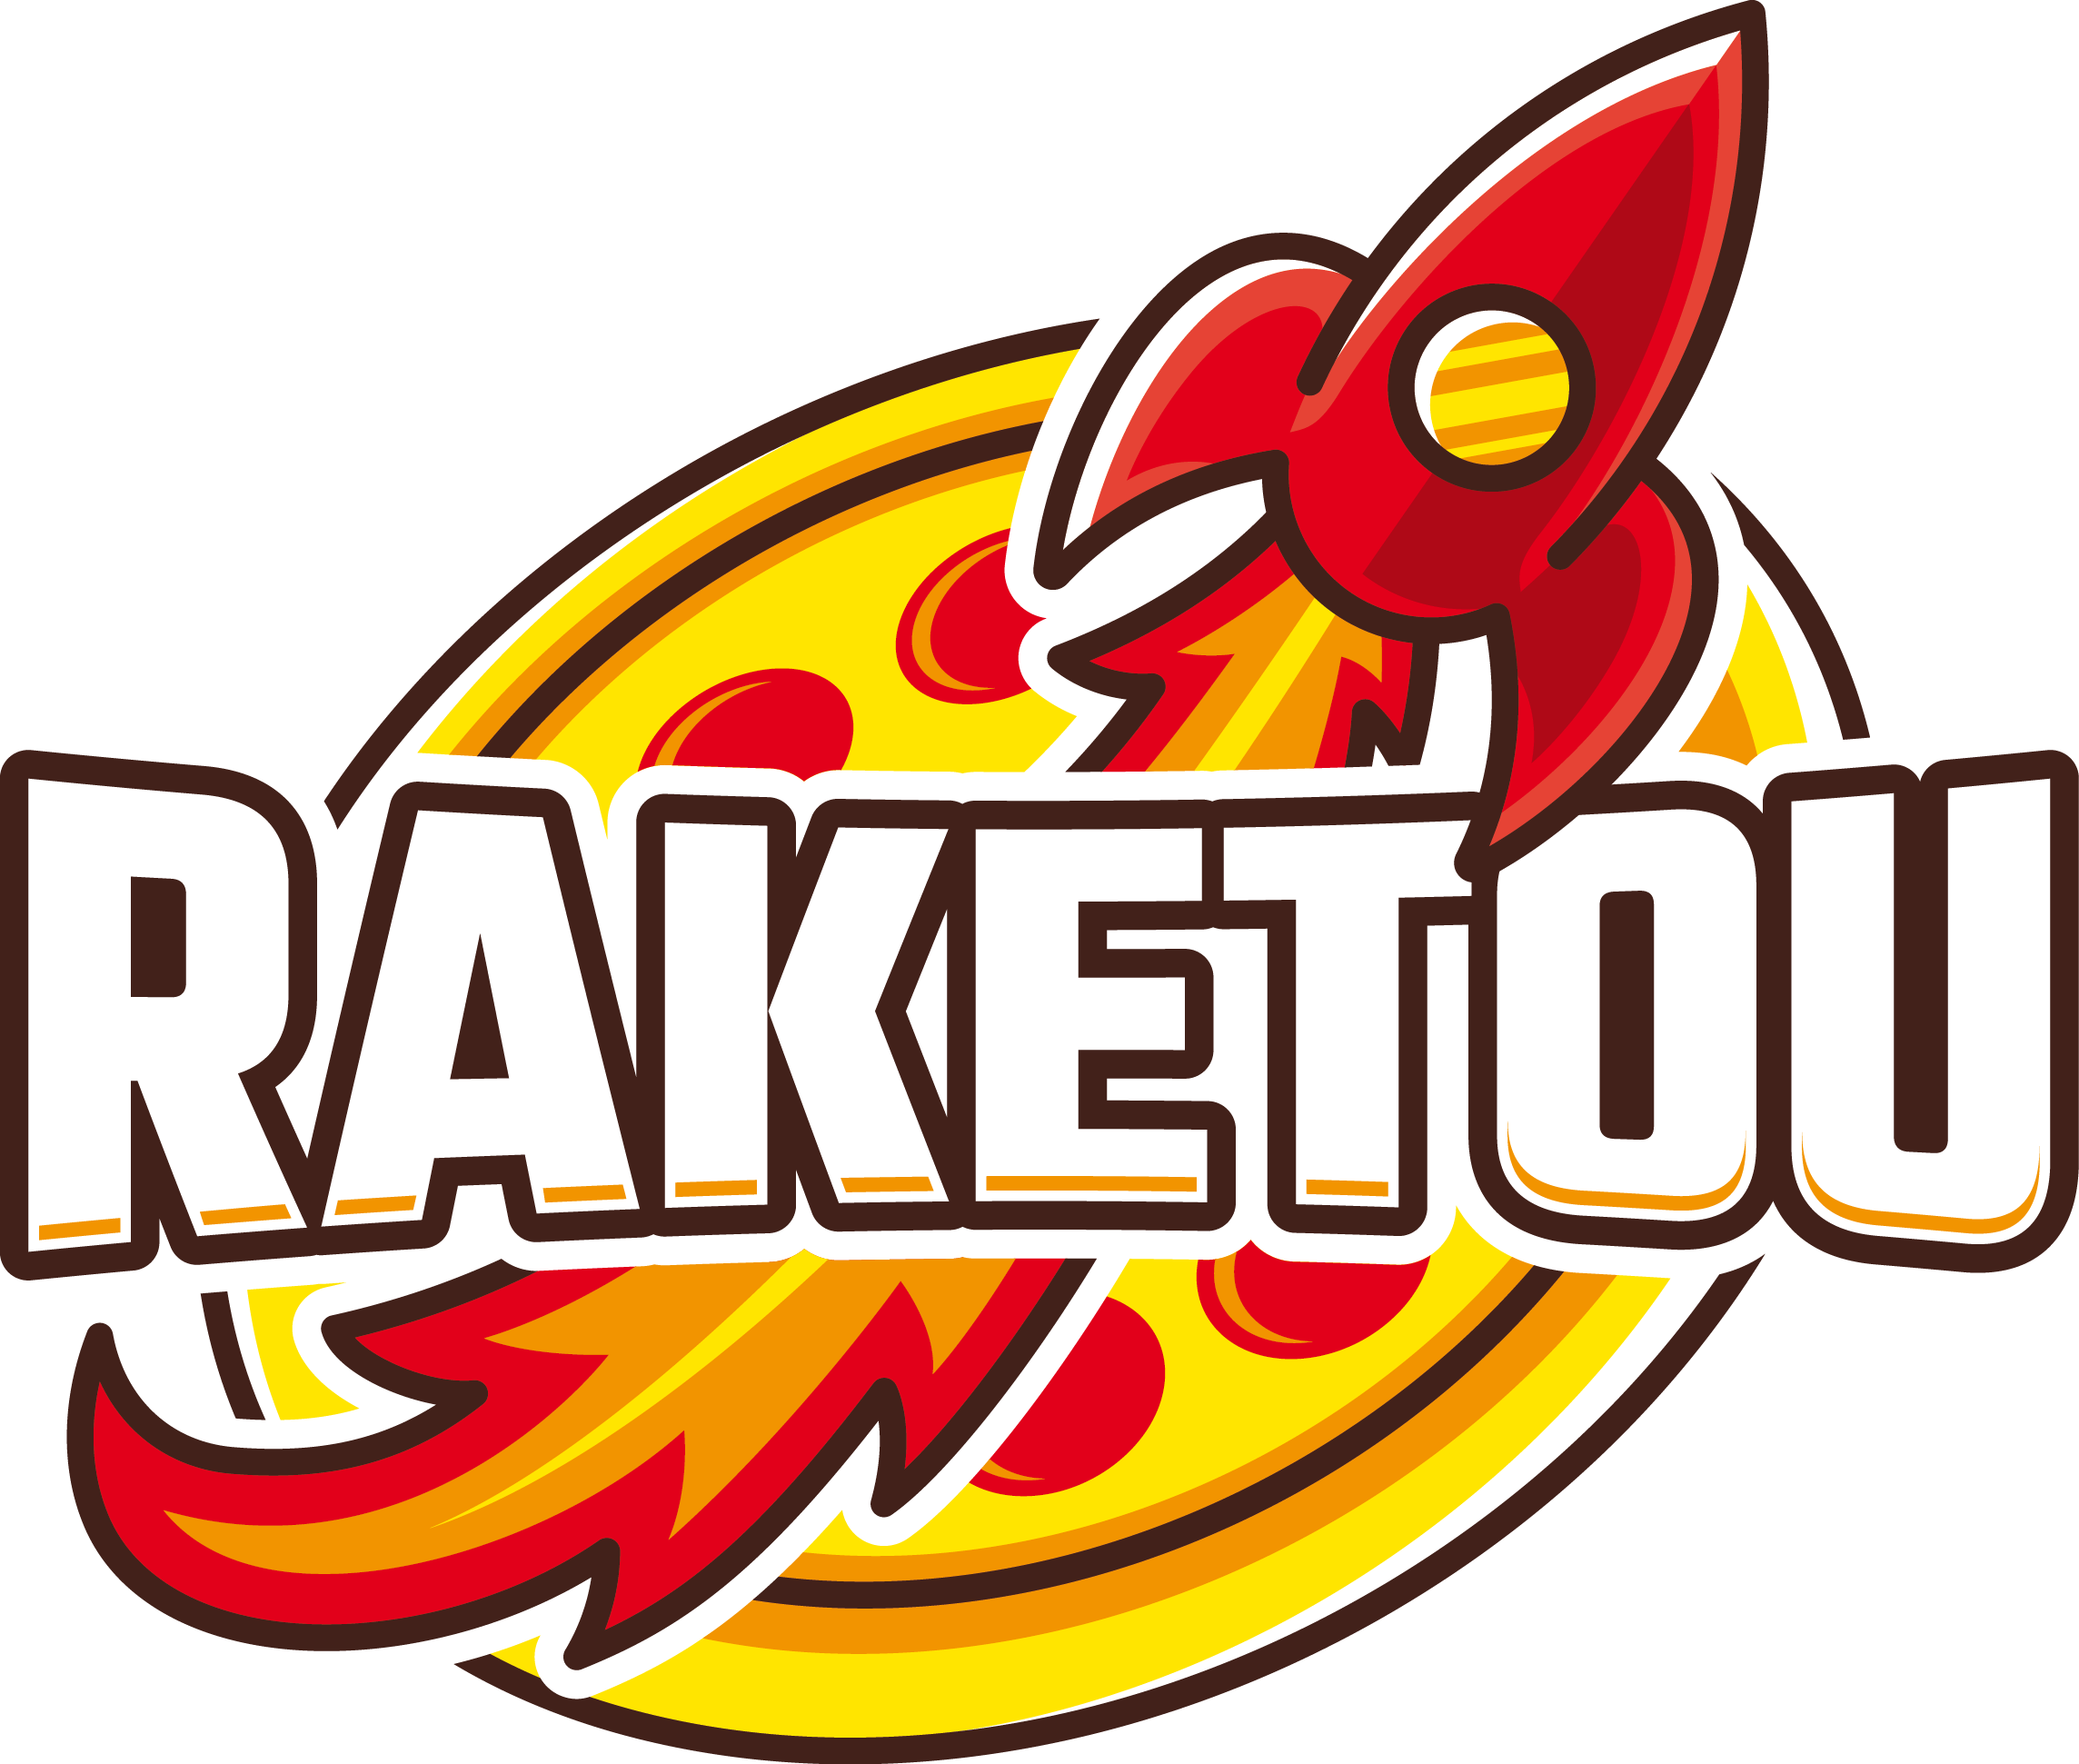 Pizza Raketou logo